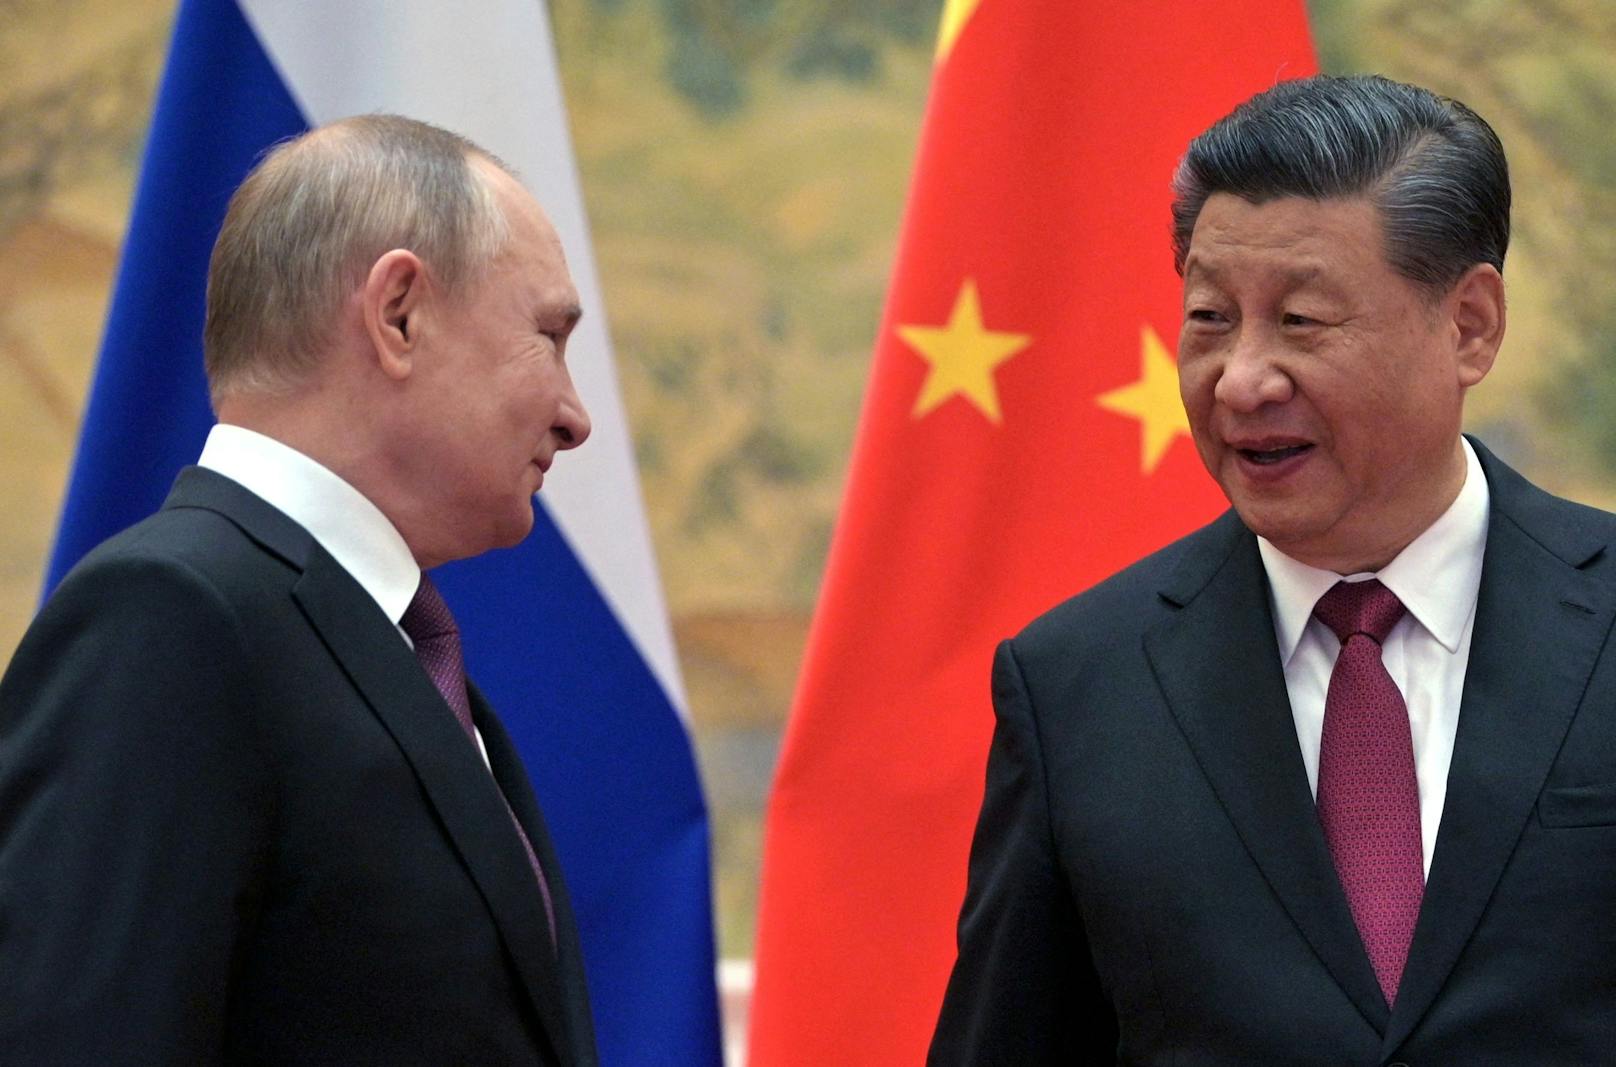 Verstehen sich gut: Wladimir Putin und  Xi Jinping bei einem Treffen am 4. Februar 2022.